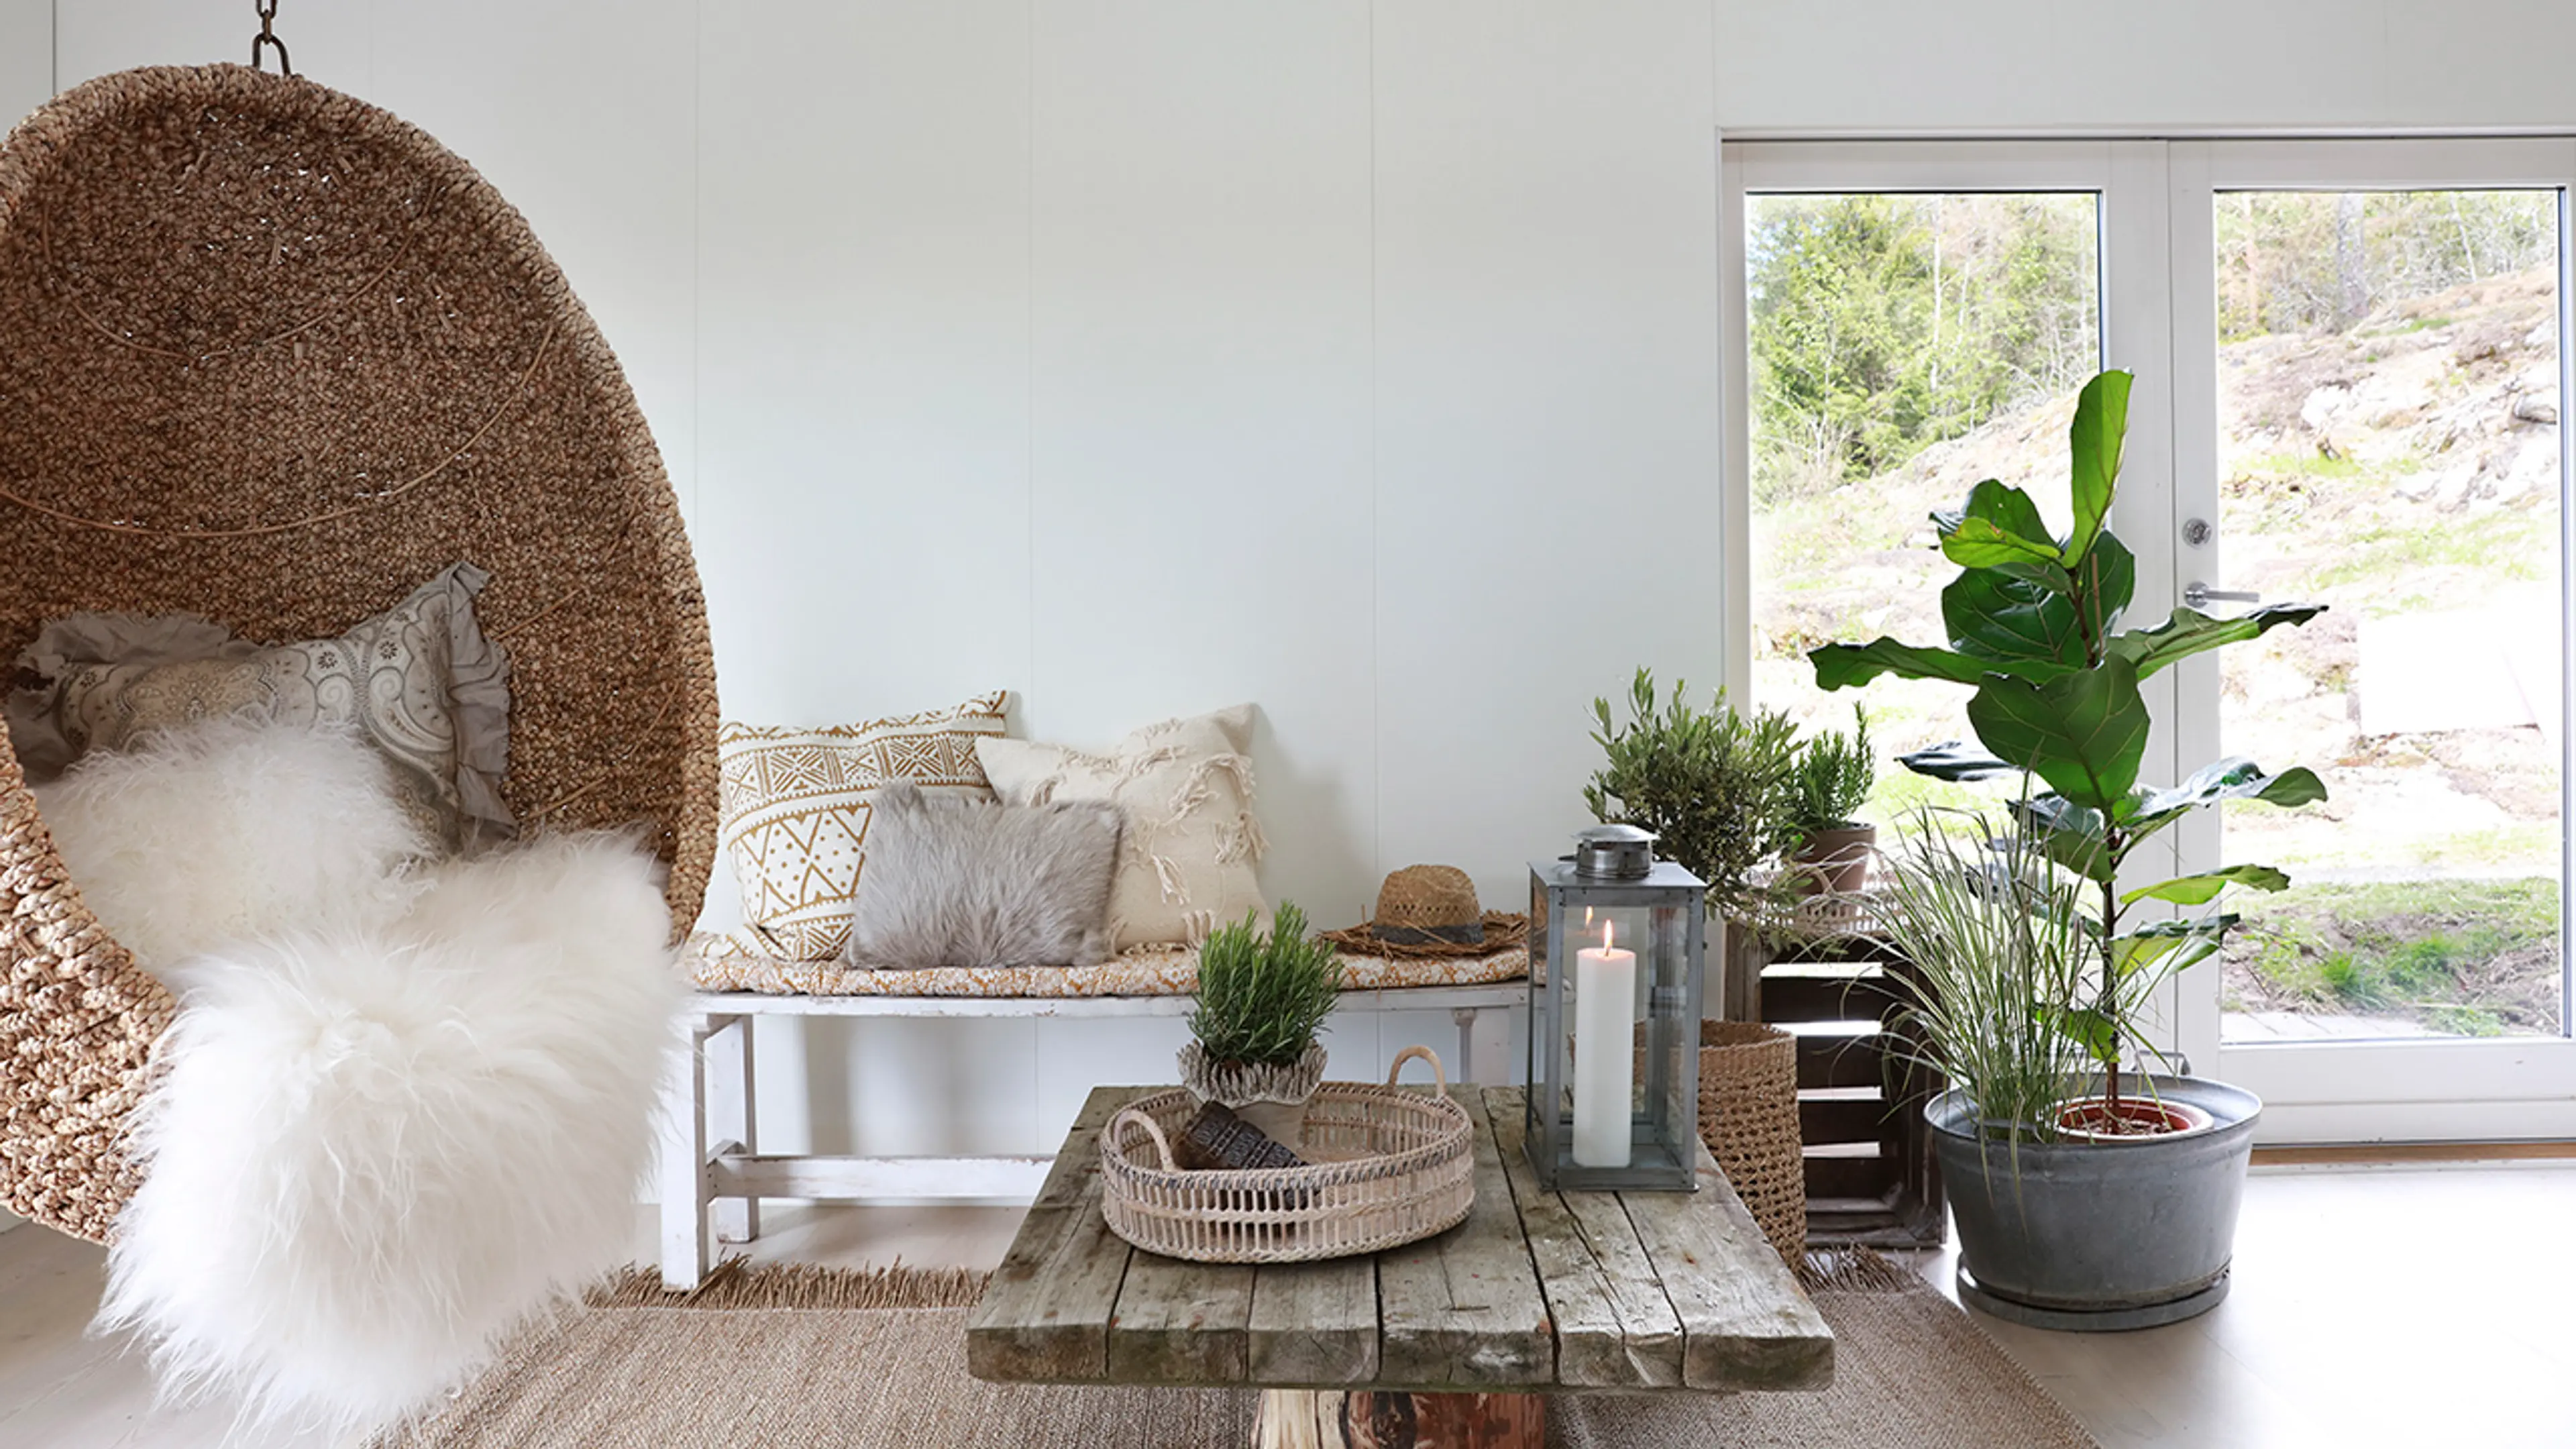 Hvit stue med veggplater og bohemsk stil med treverk og rotting.